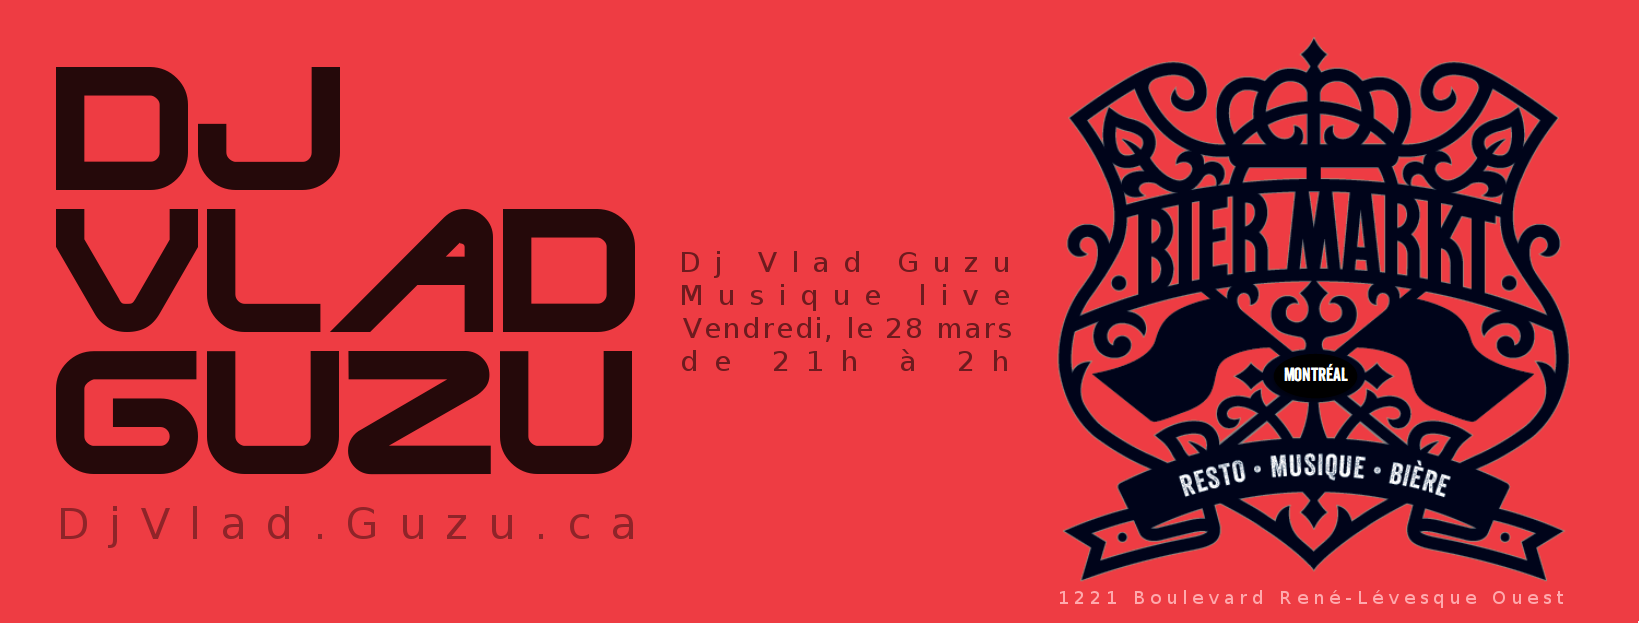 DJ Vlad Guzu et Rebound @ Bier Markt, Montreal | MAR 28